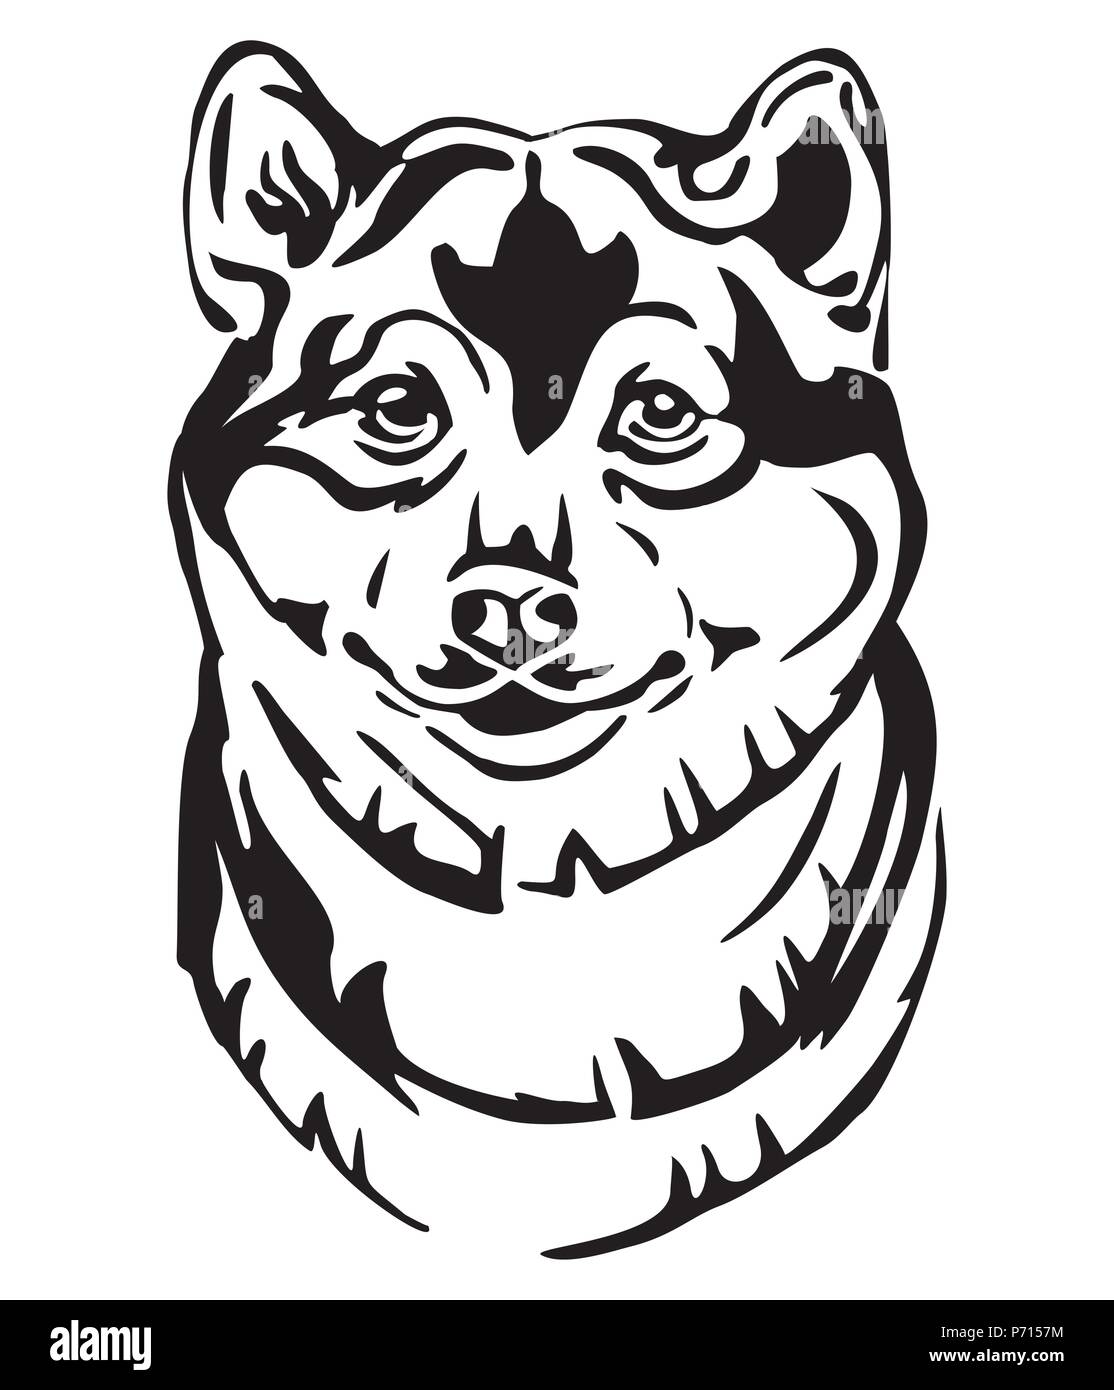 Ritratto decorativo di cane Shiba Inu, vettore isolato illustrazione in colore nero su sfondo bianco. Immagine per design e tatuaggio. Illustrazione Vettoriale